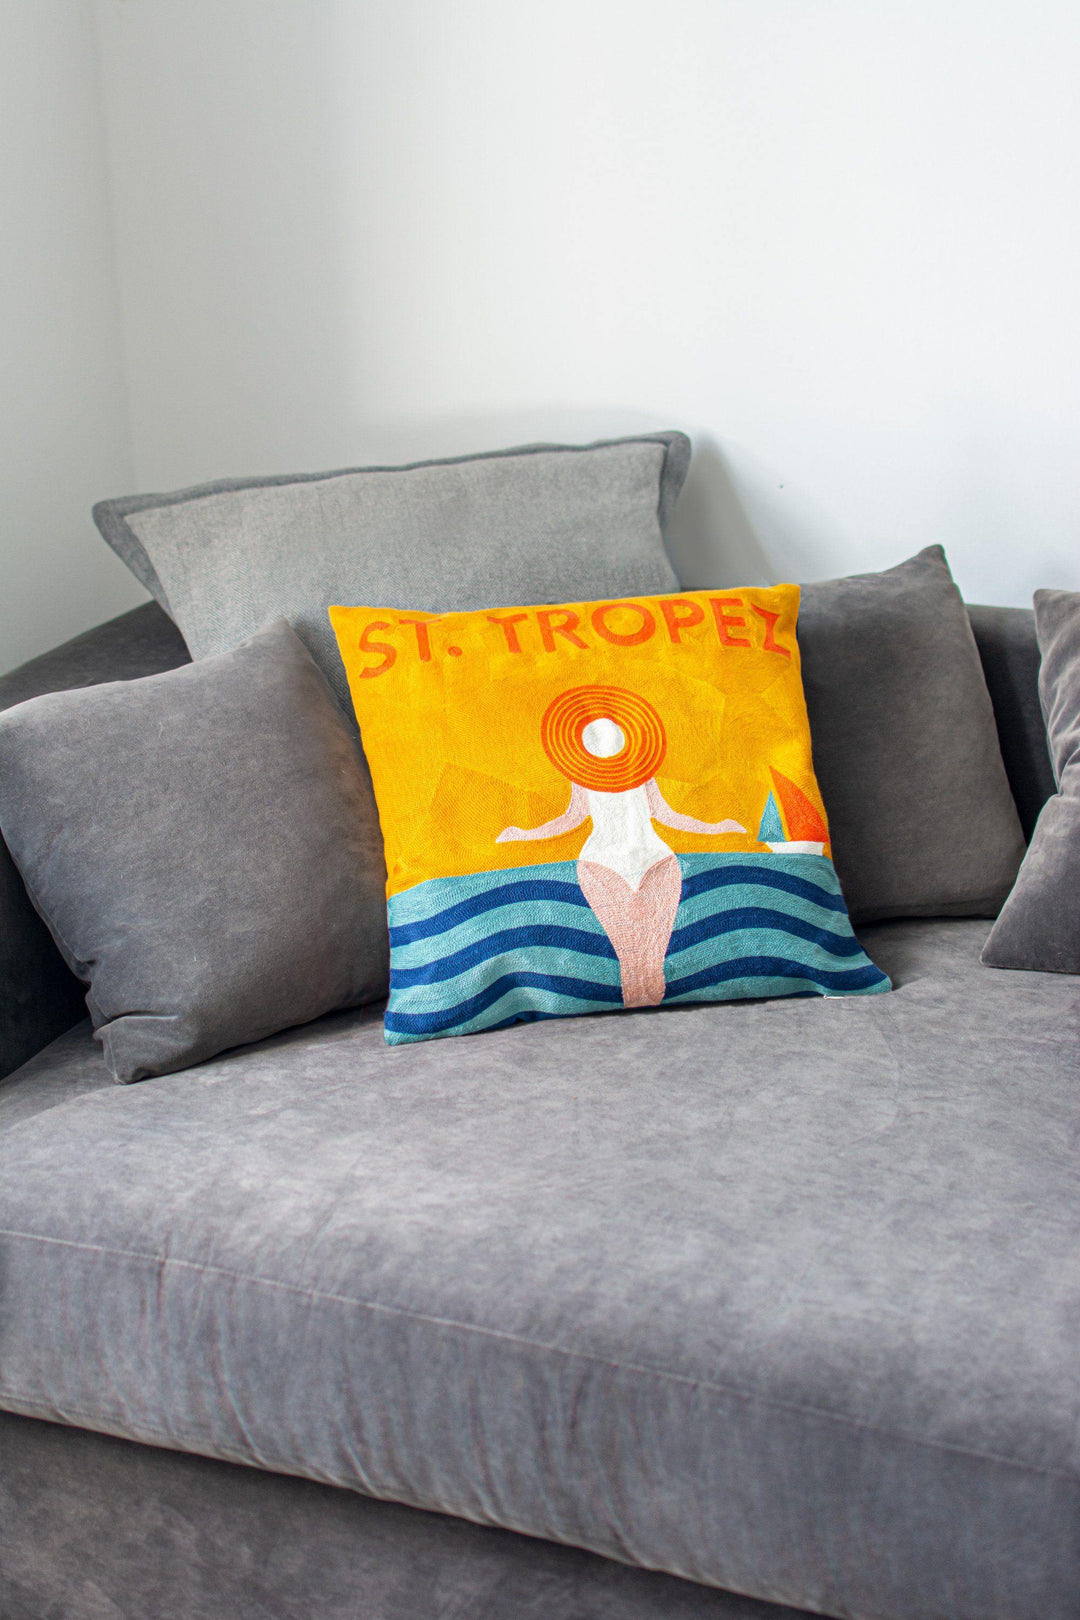 St. Tropez Needlepoint Cushion